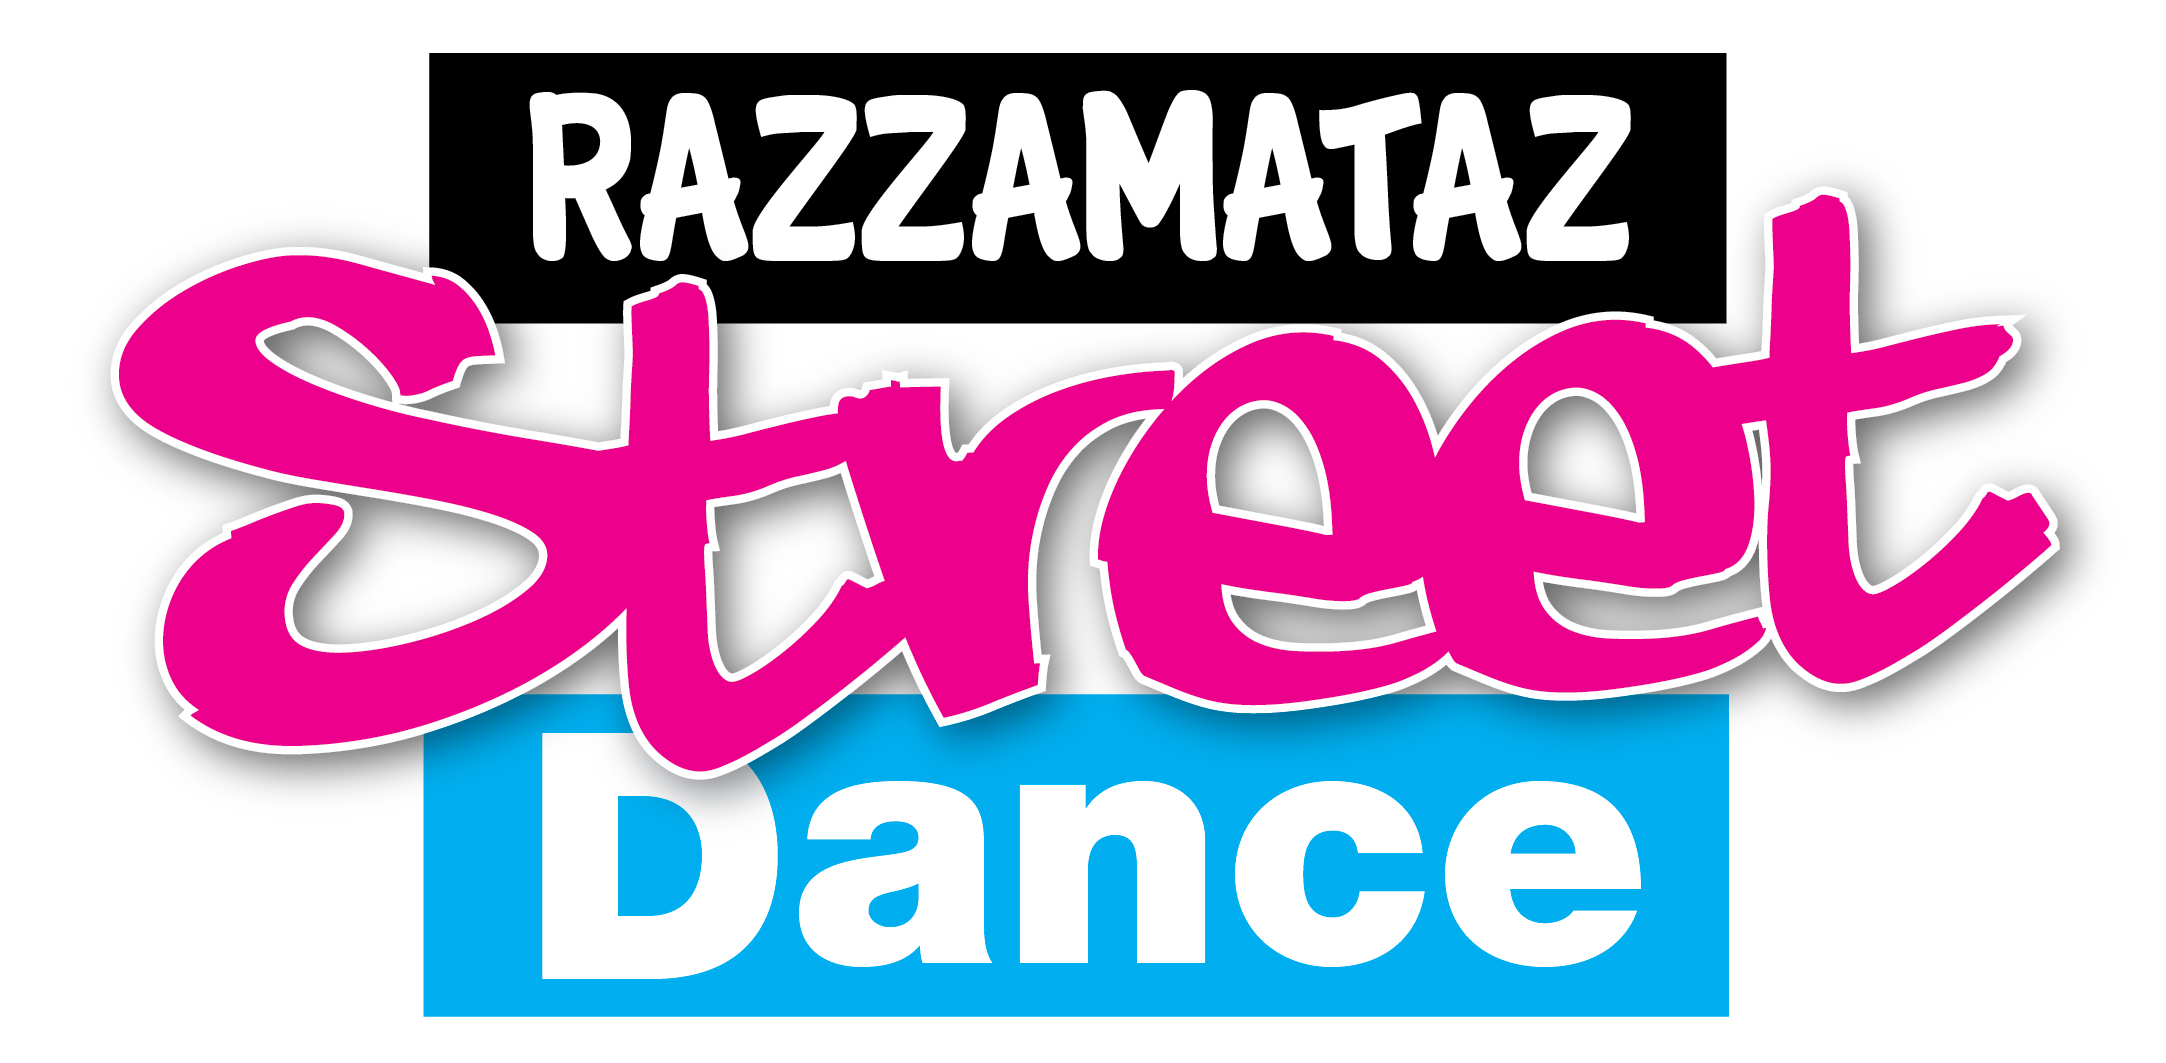 Razzamataz Street Dance 